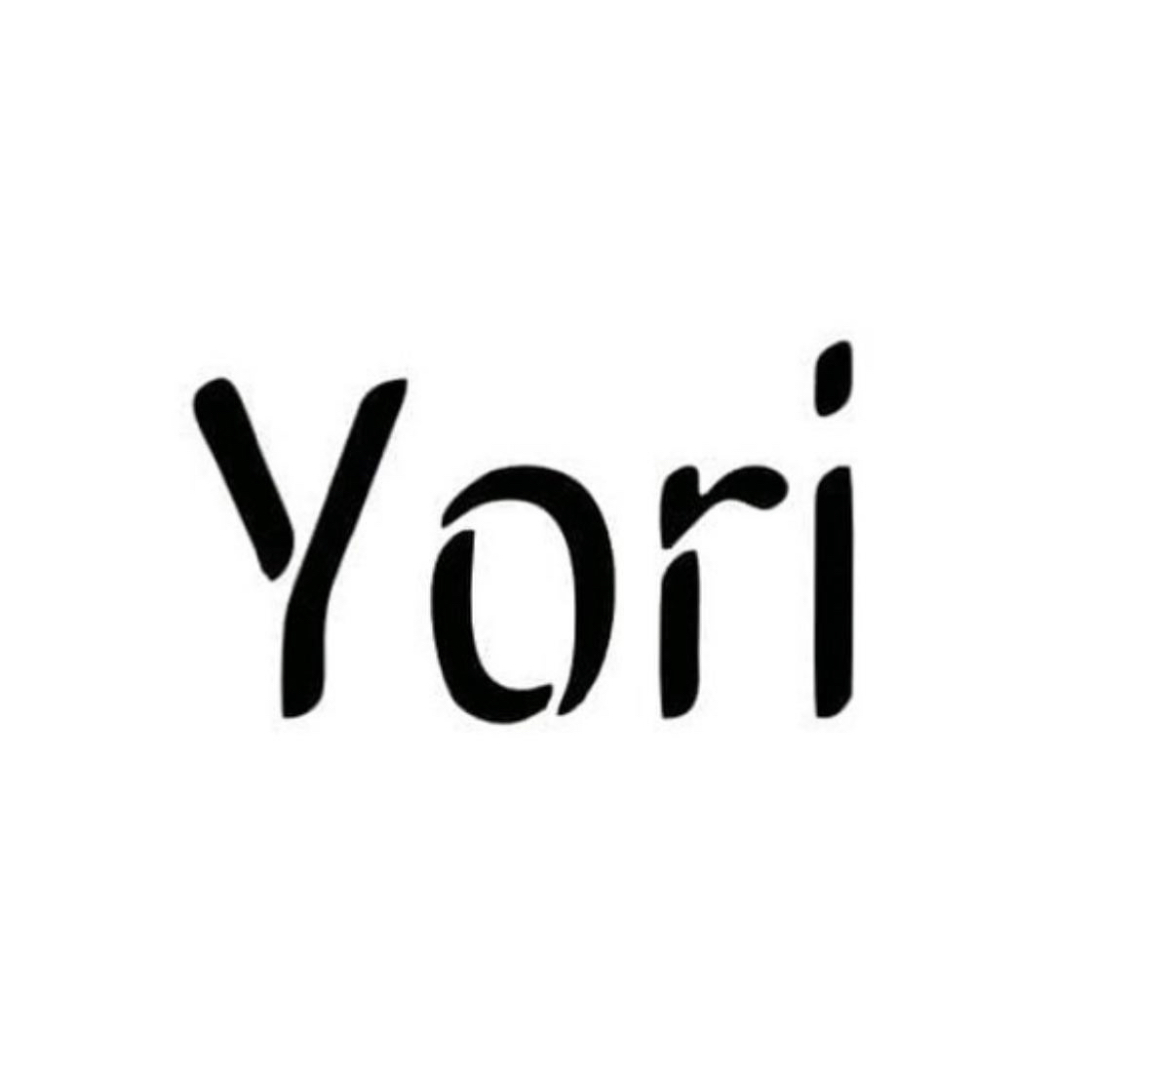 Yori